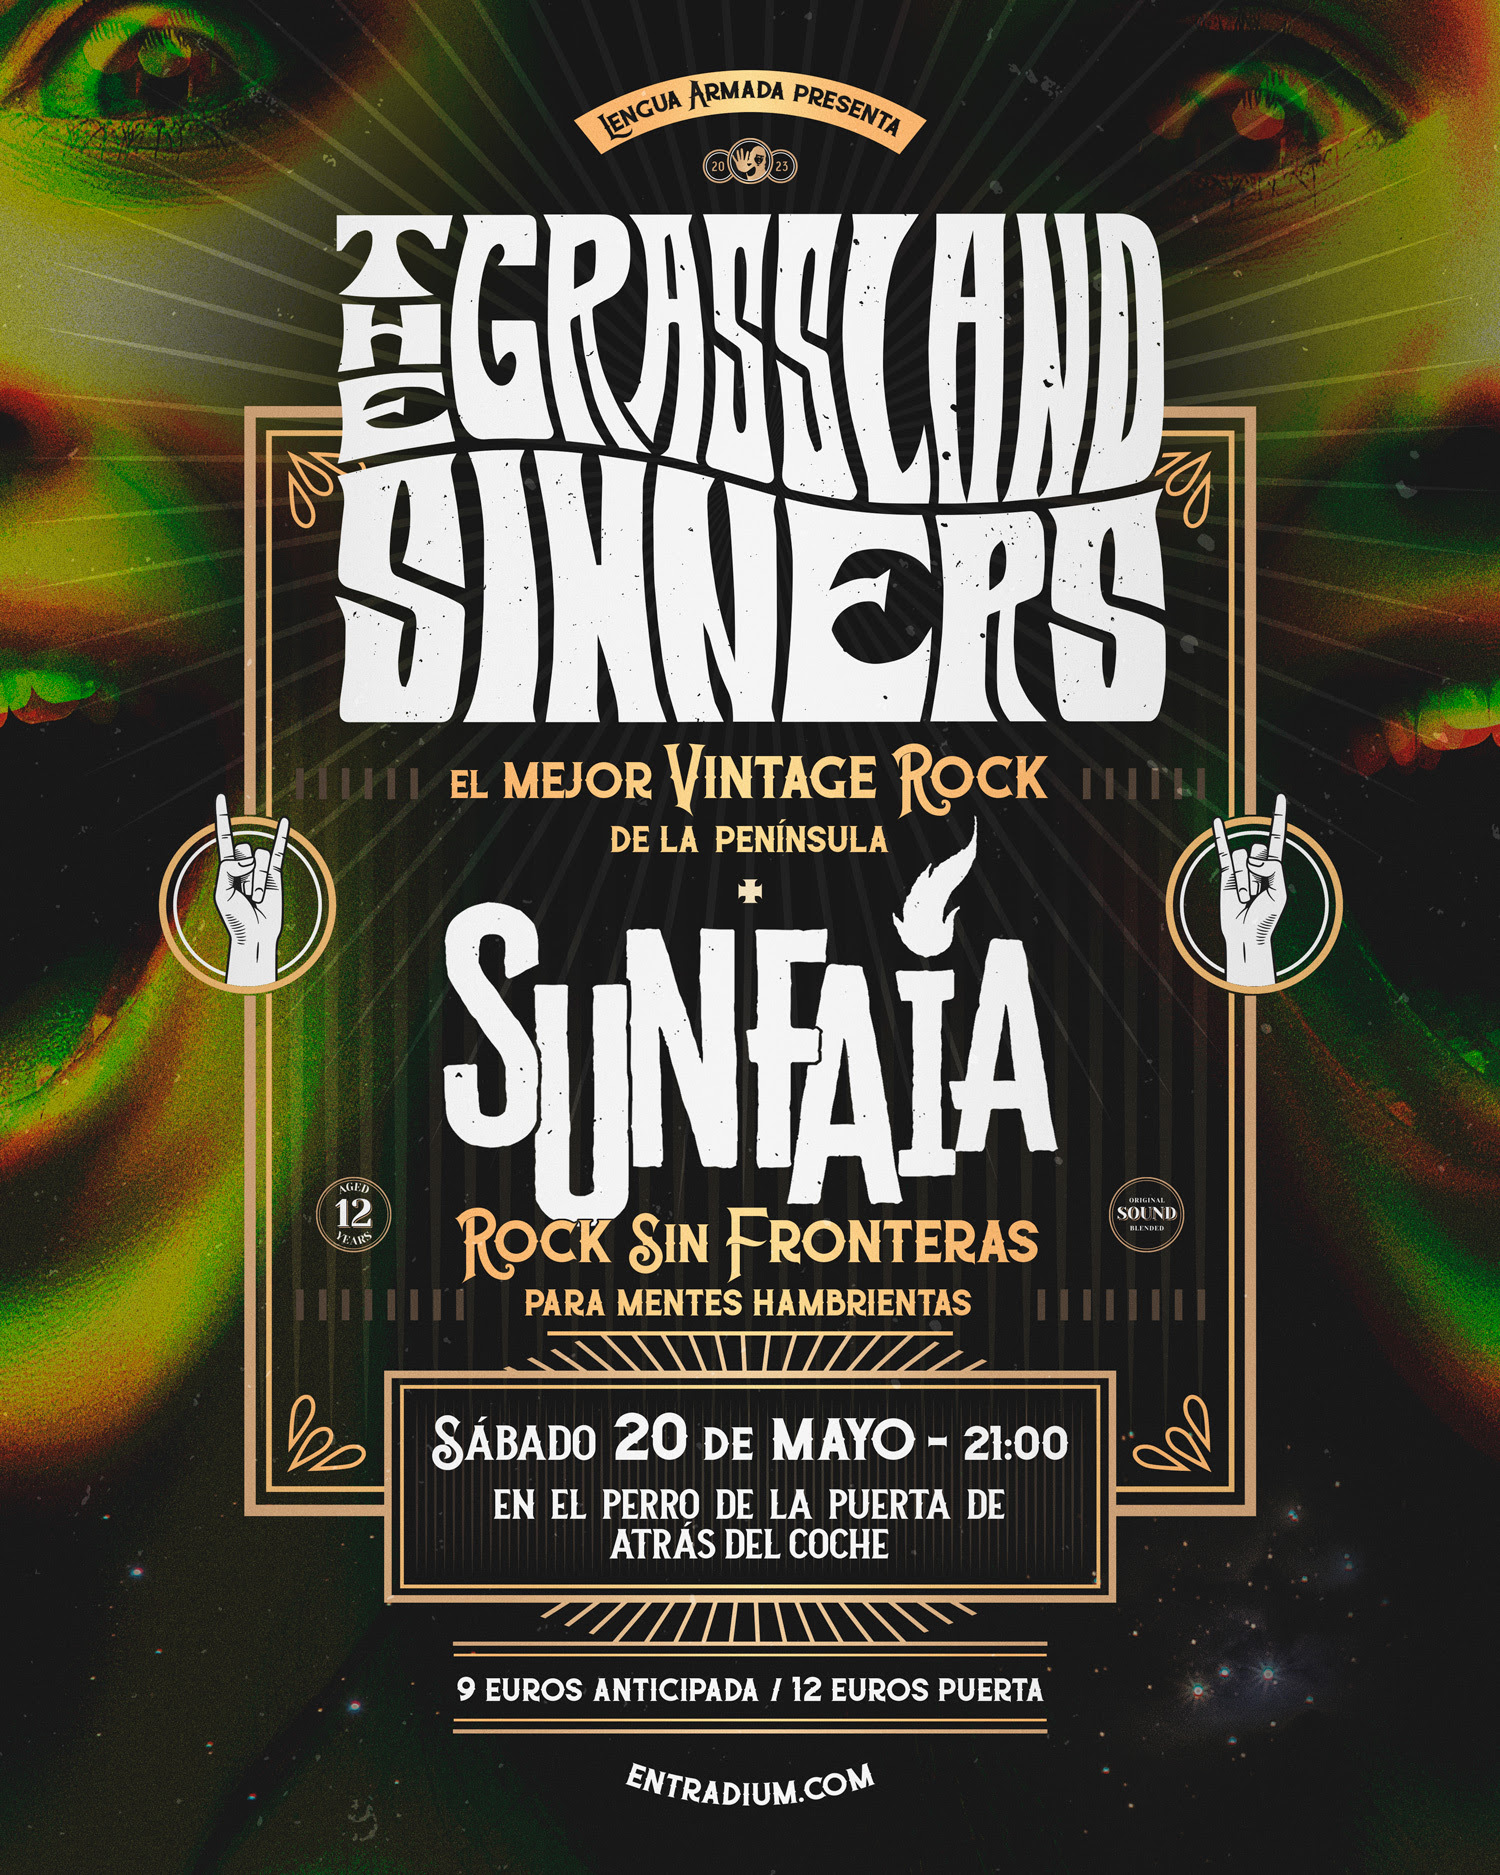 The Grassland Sinners + Sunfaia en Madrid el día 20